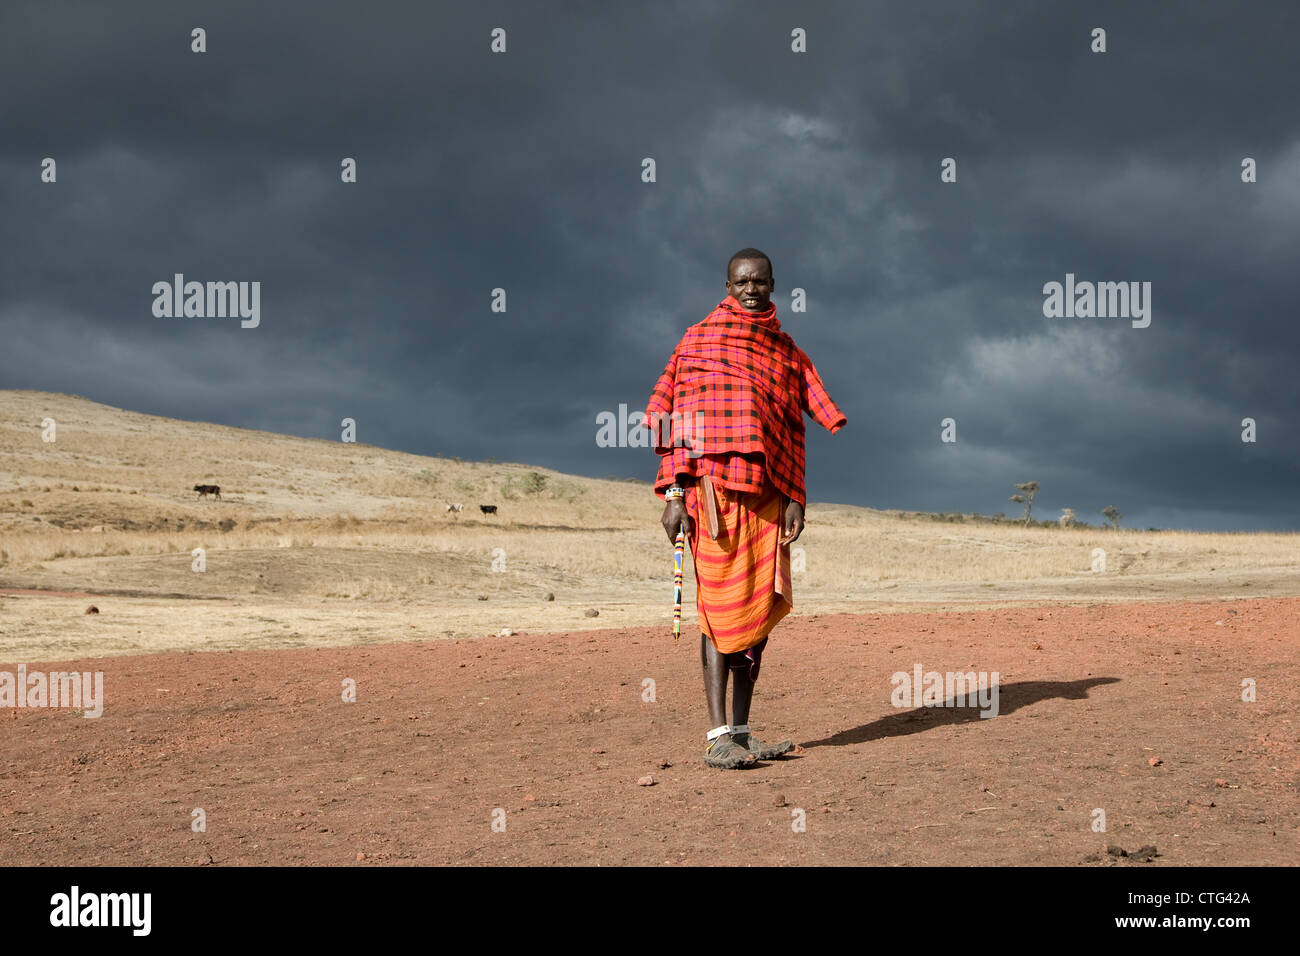 Maasai, Masai, Masaai, people in Tanzania, Africa. Stock Photo